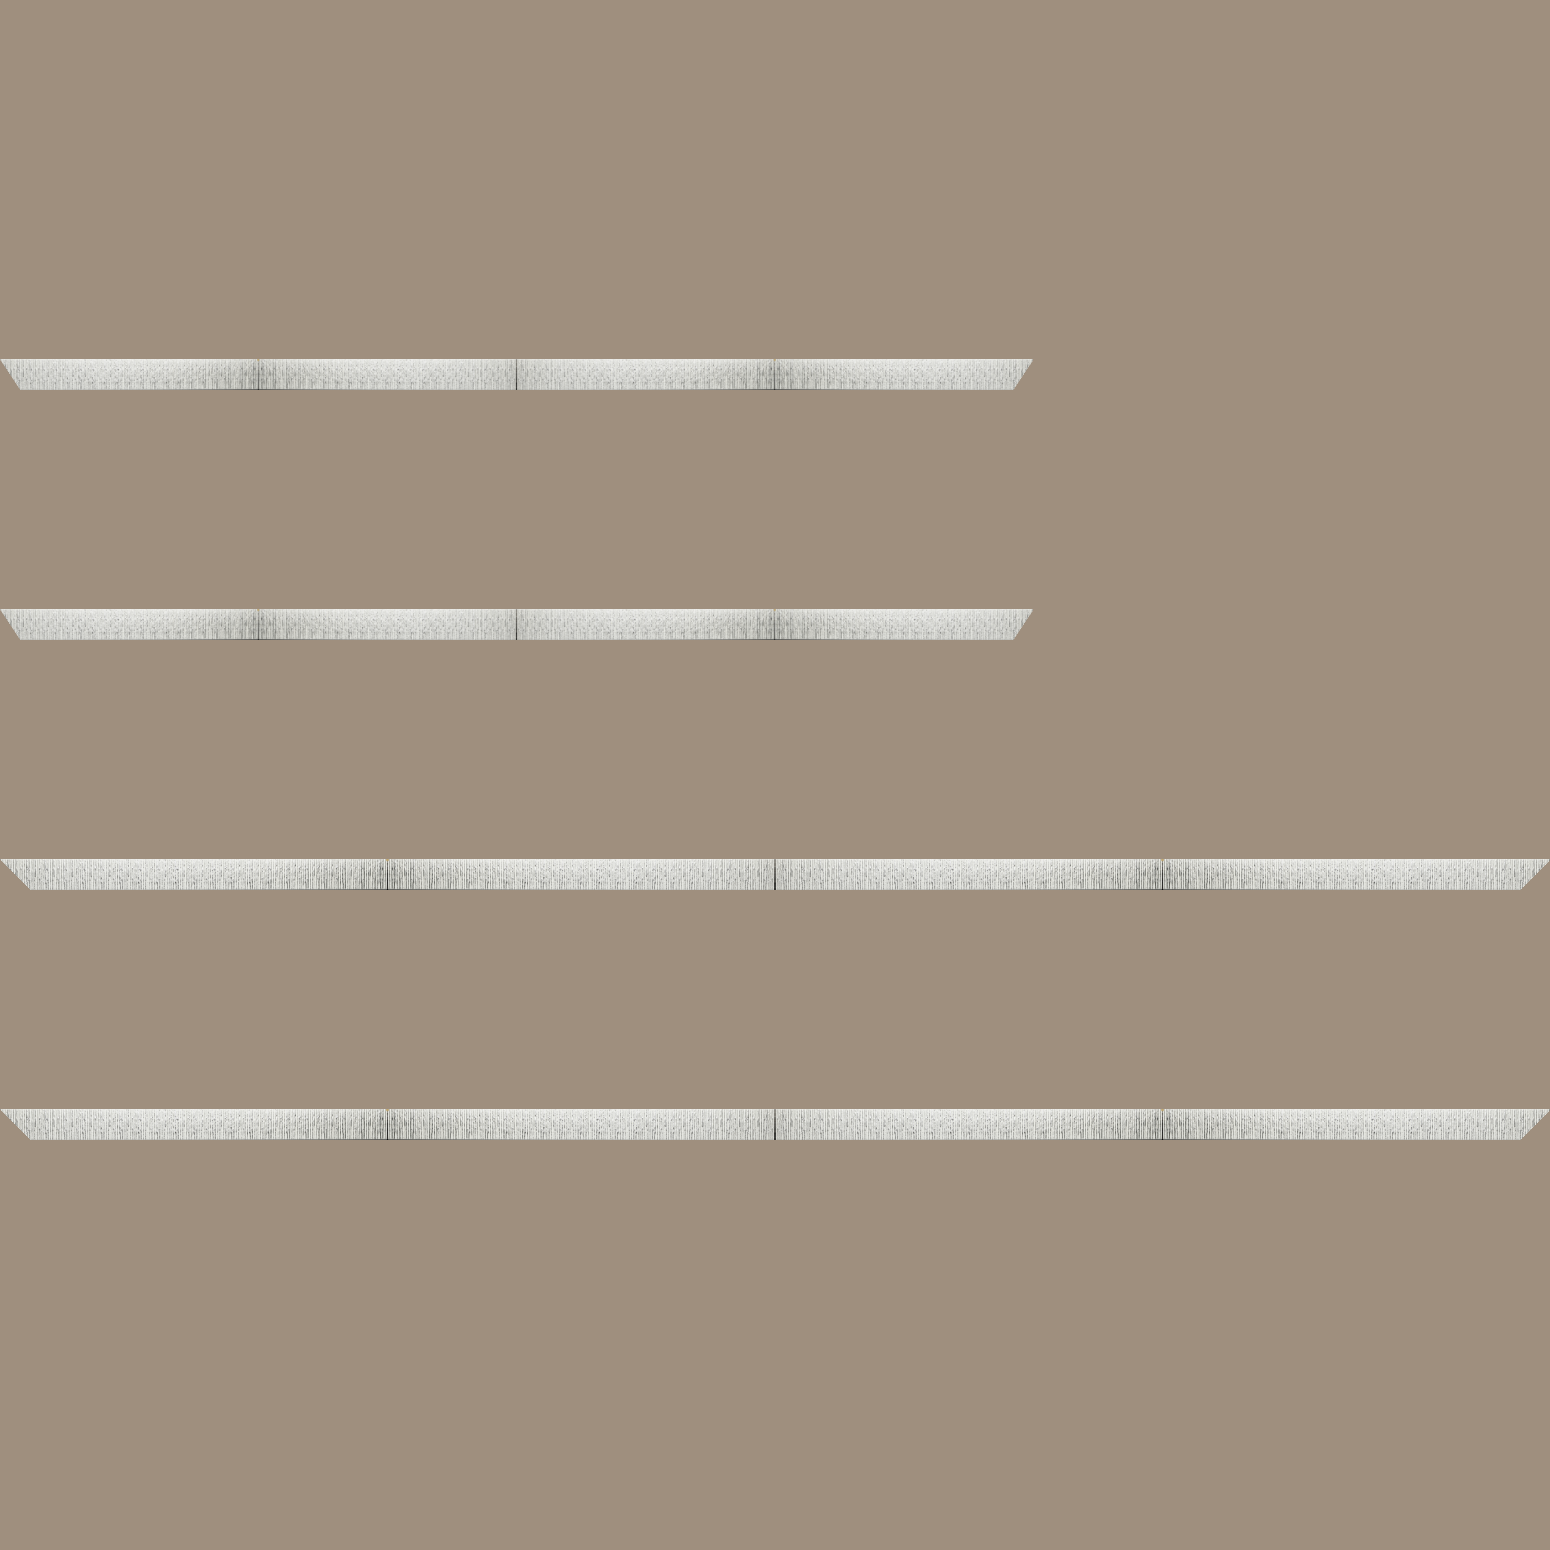 Baguette bois profil plat largeur 10.5cm couleur blanc mat strié argent chromé en relief - 84.1x118.9